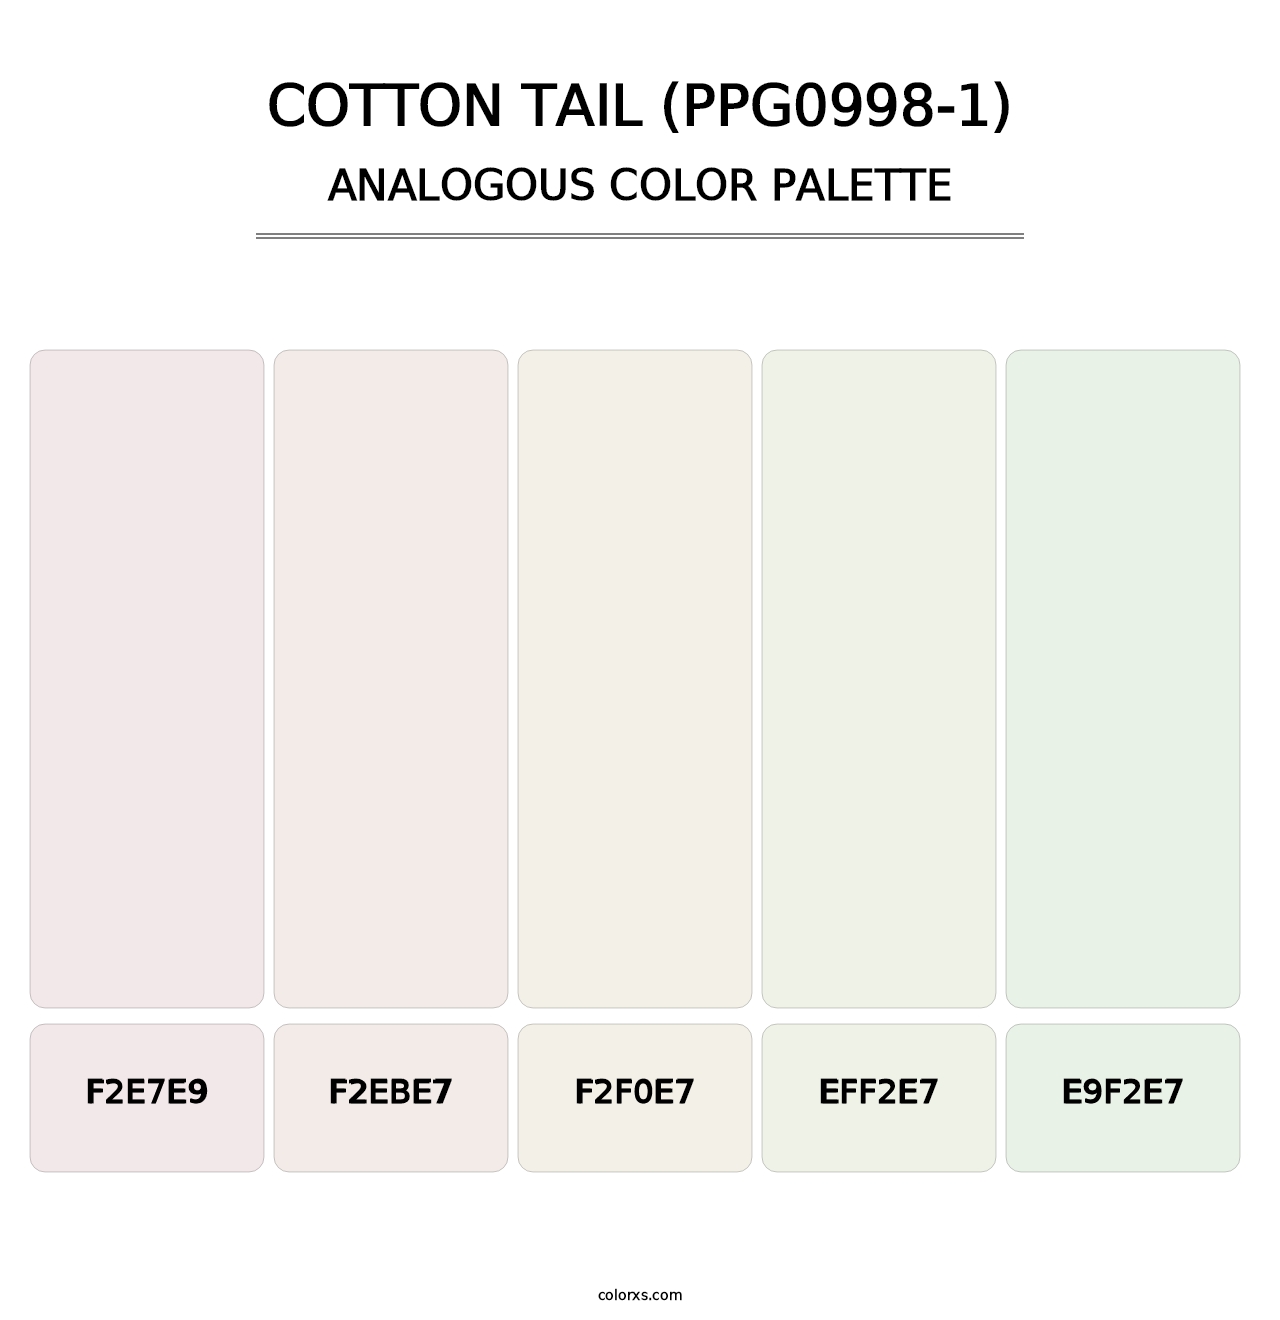 Cotton Tail (PPG0998-1) - Analogous Color Palette